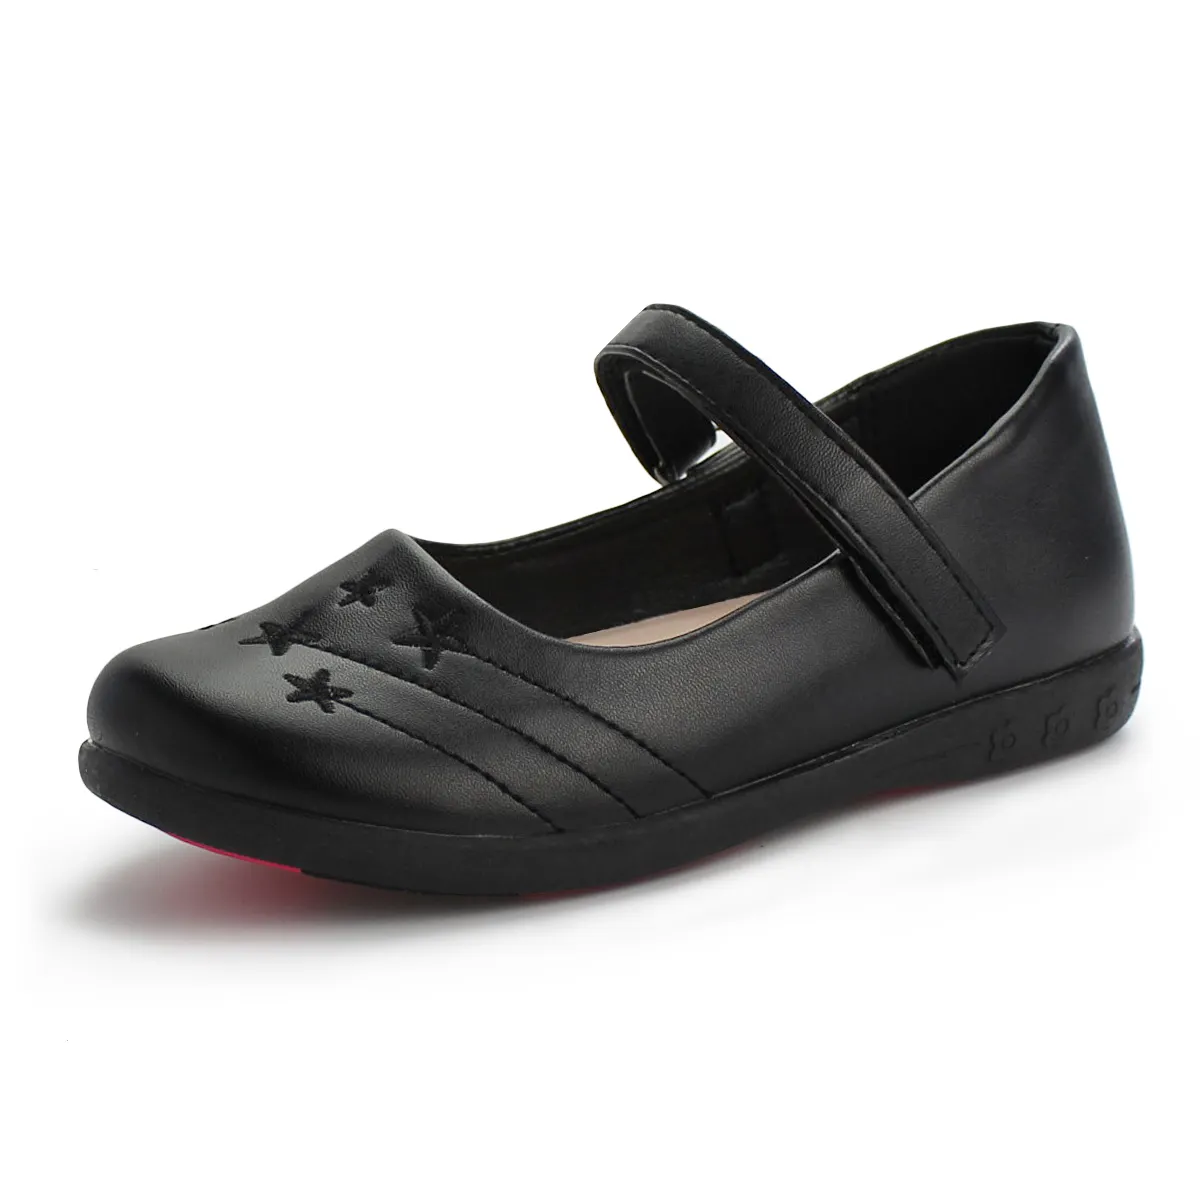 Kinder Schwarz Schule Schuhe Uniform Mary Jane Mit Klassische Runde leichte Mädchen Schule Schuhe